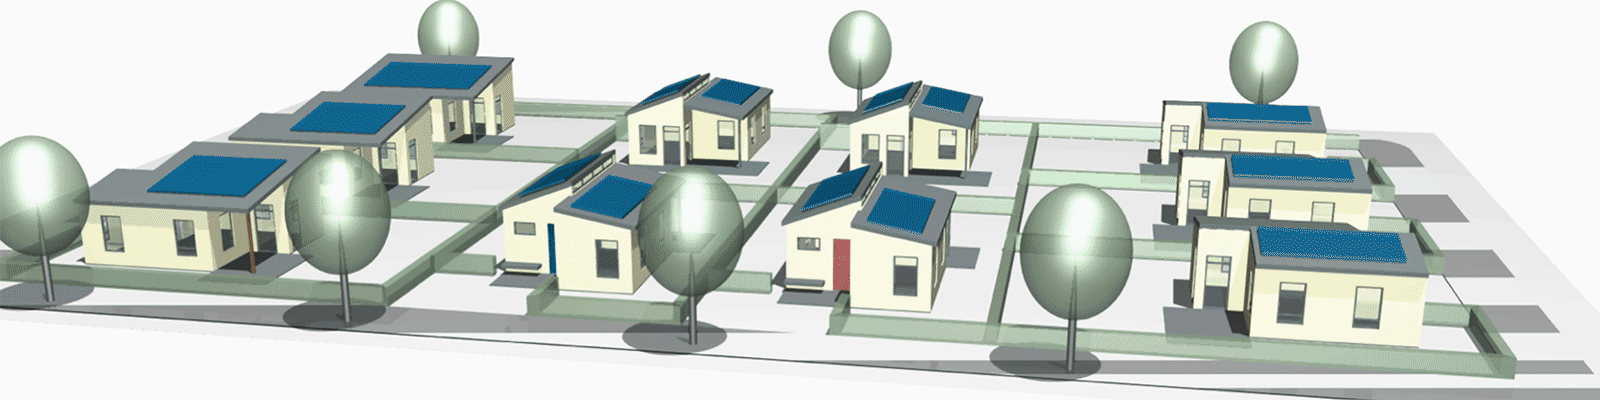 Block mit 10 Häusern: Dezentrales Wasser und Energiemanagement